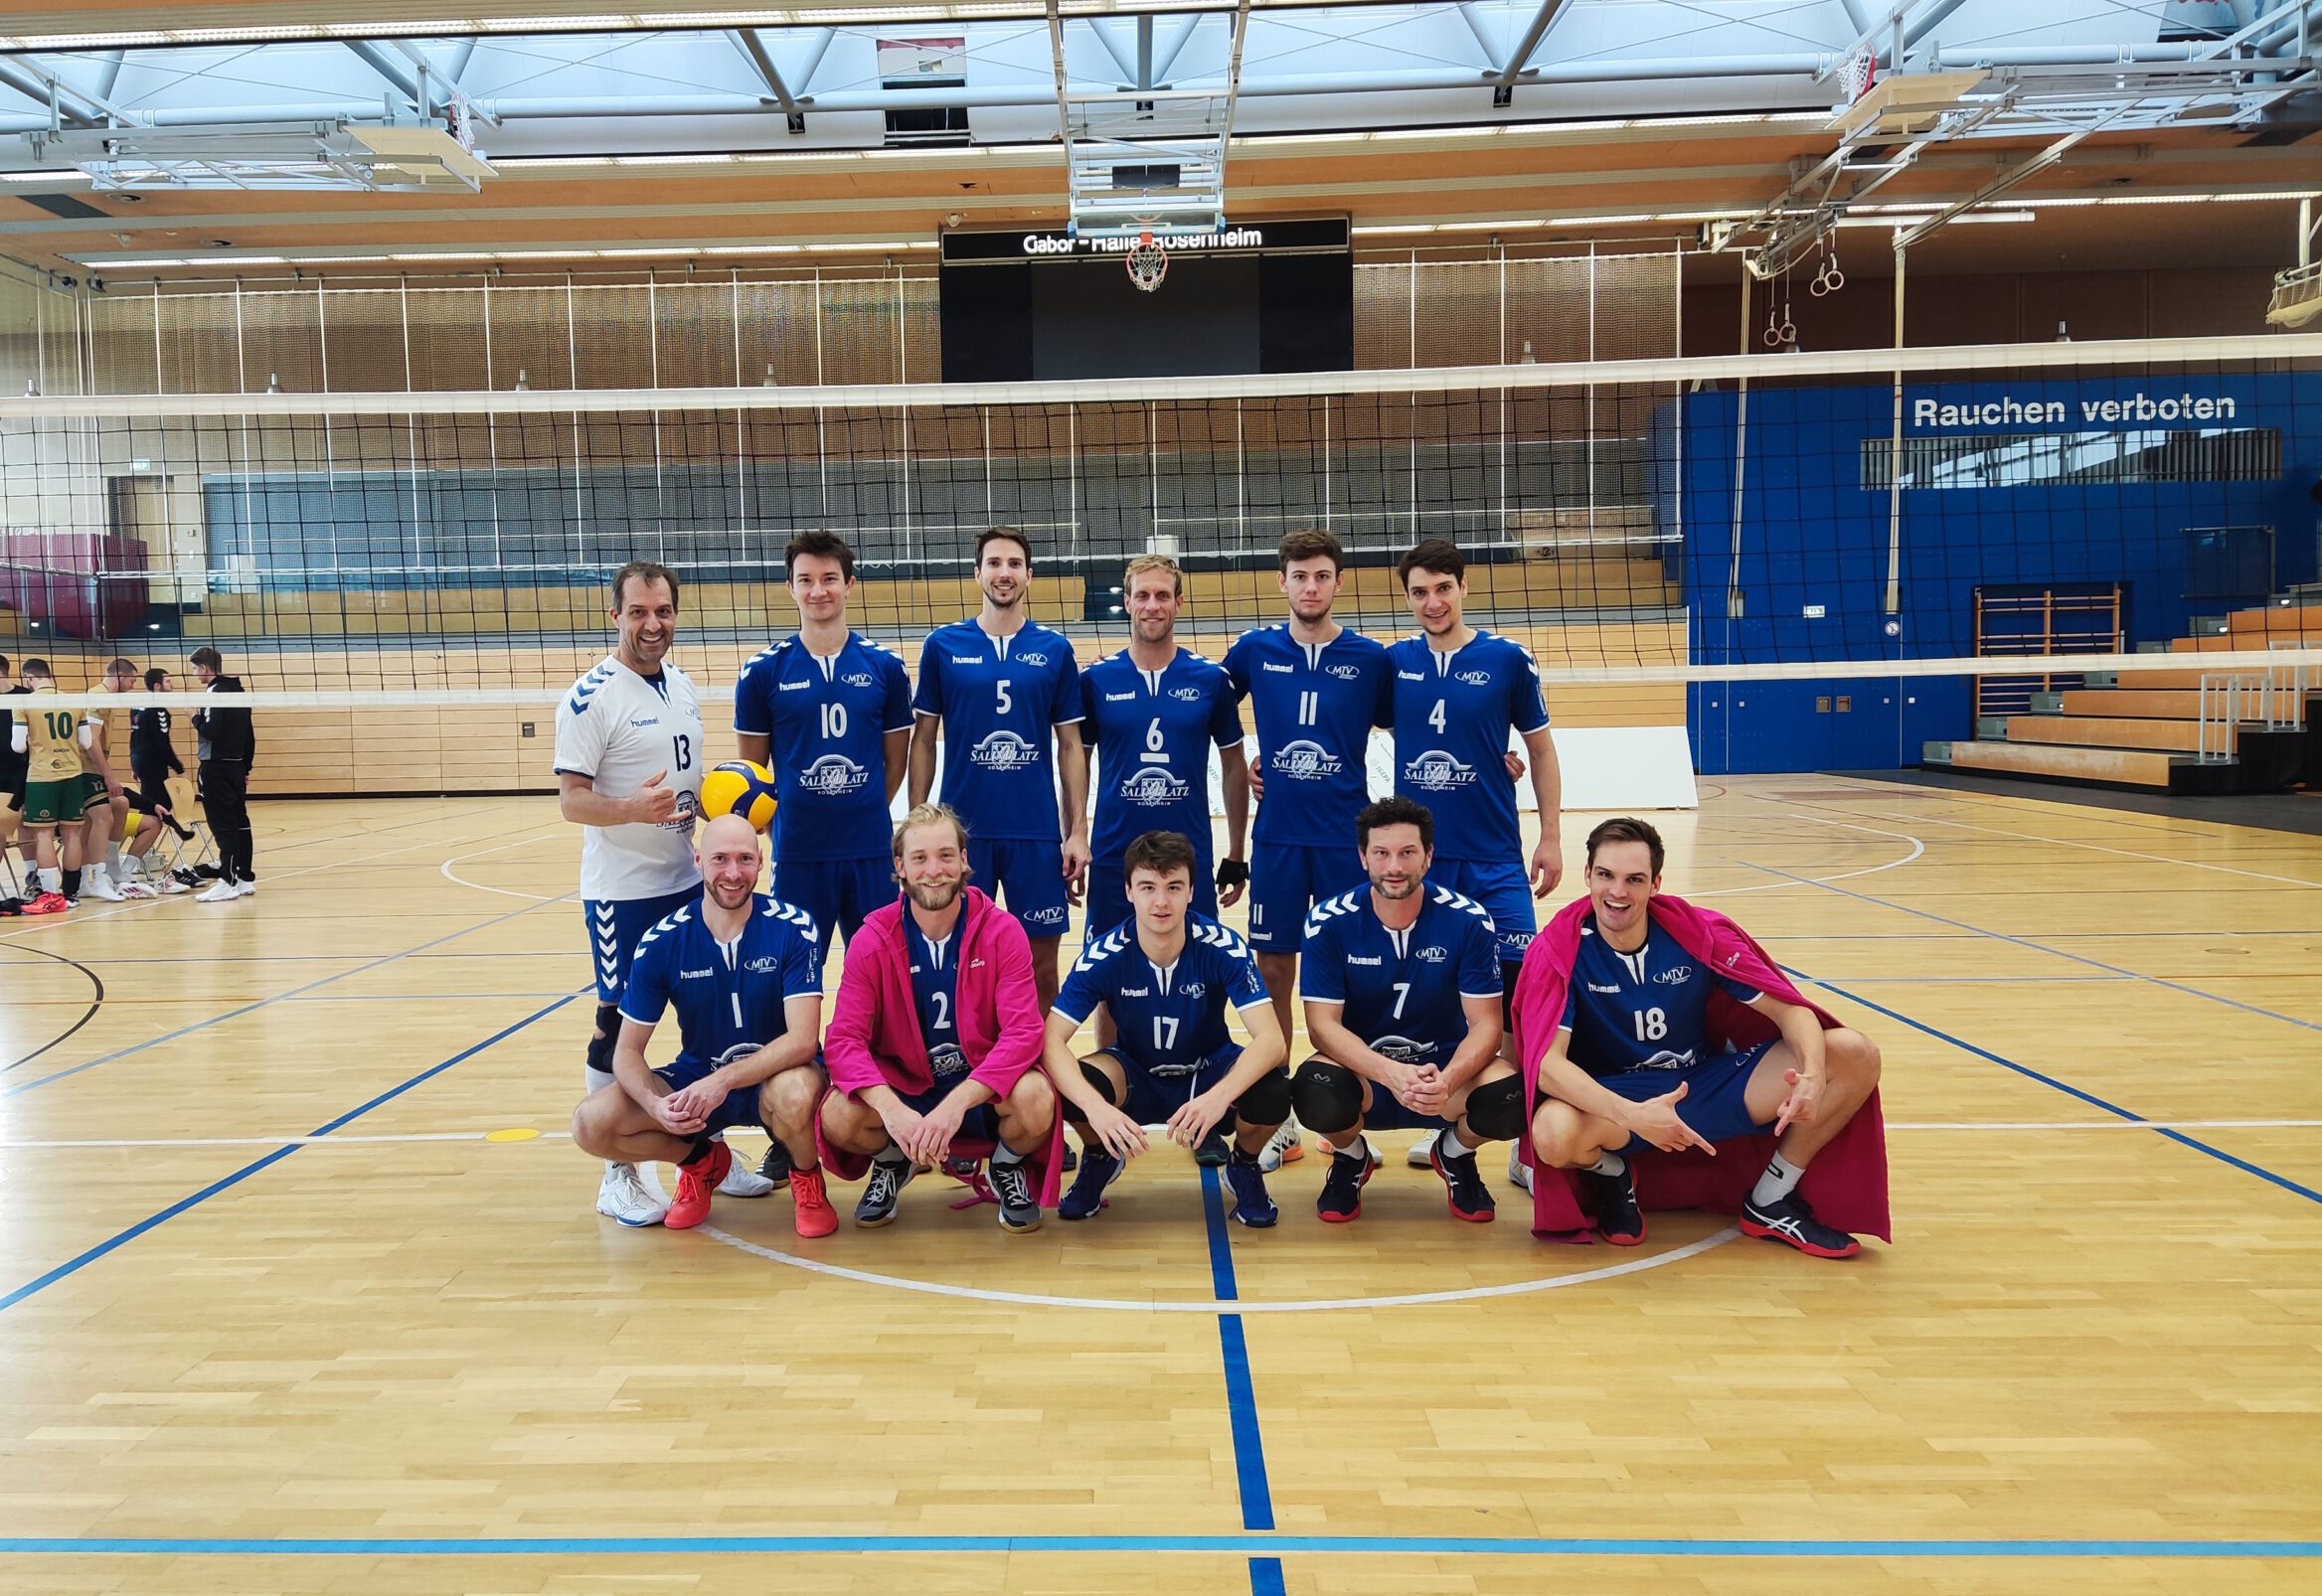 https://www.volleyball-rosenheim.de/wp-content/uploads/2022/10/Volleyball_Rosenheim_Herren1_TB_Muenchen-scaled-e1665752662920.jpg